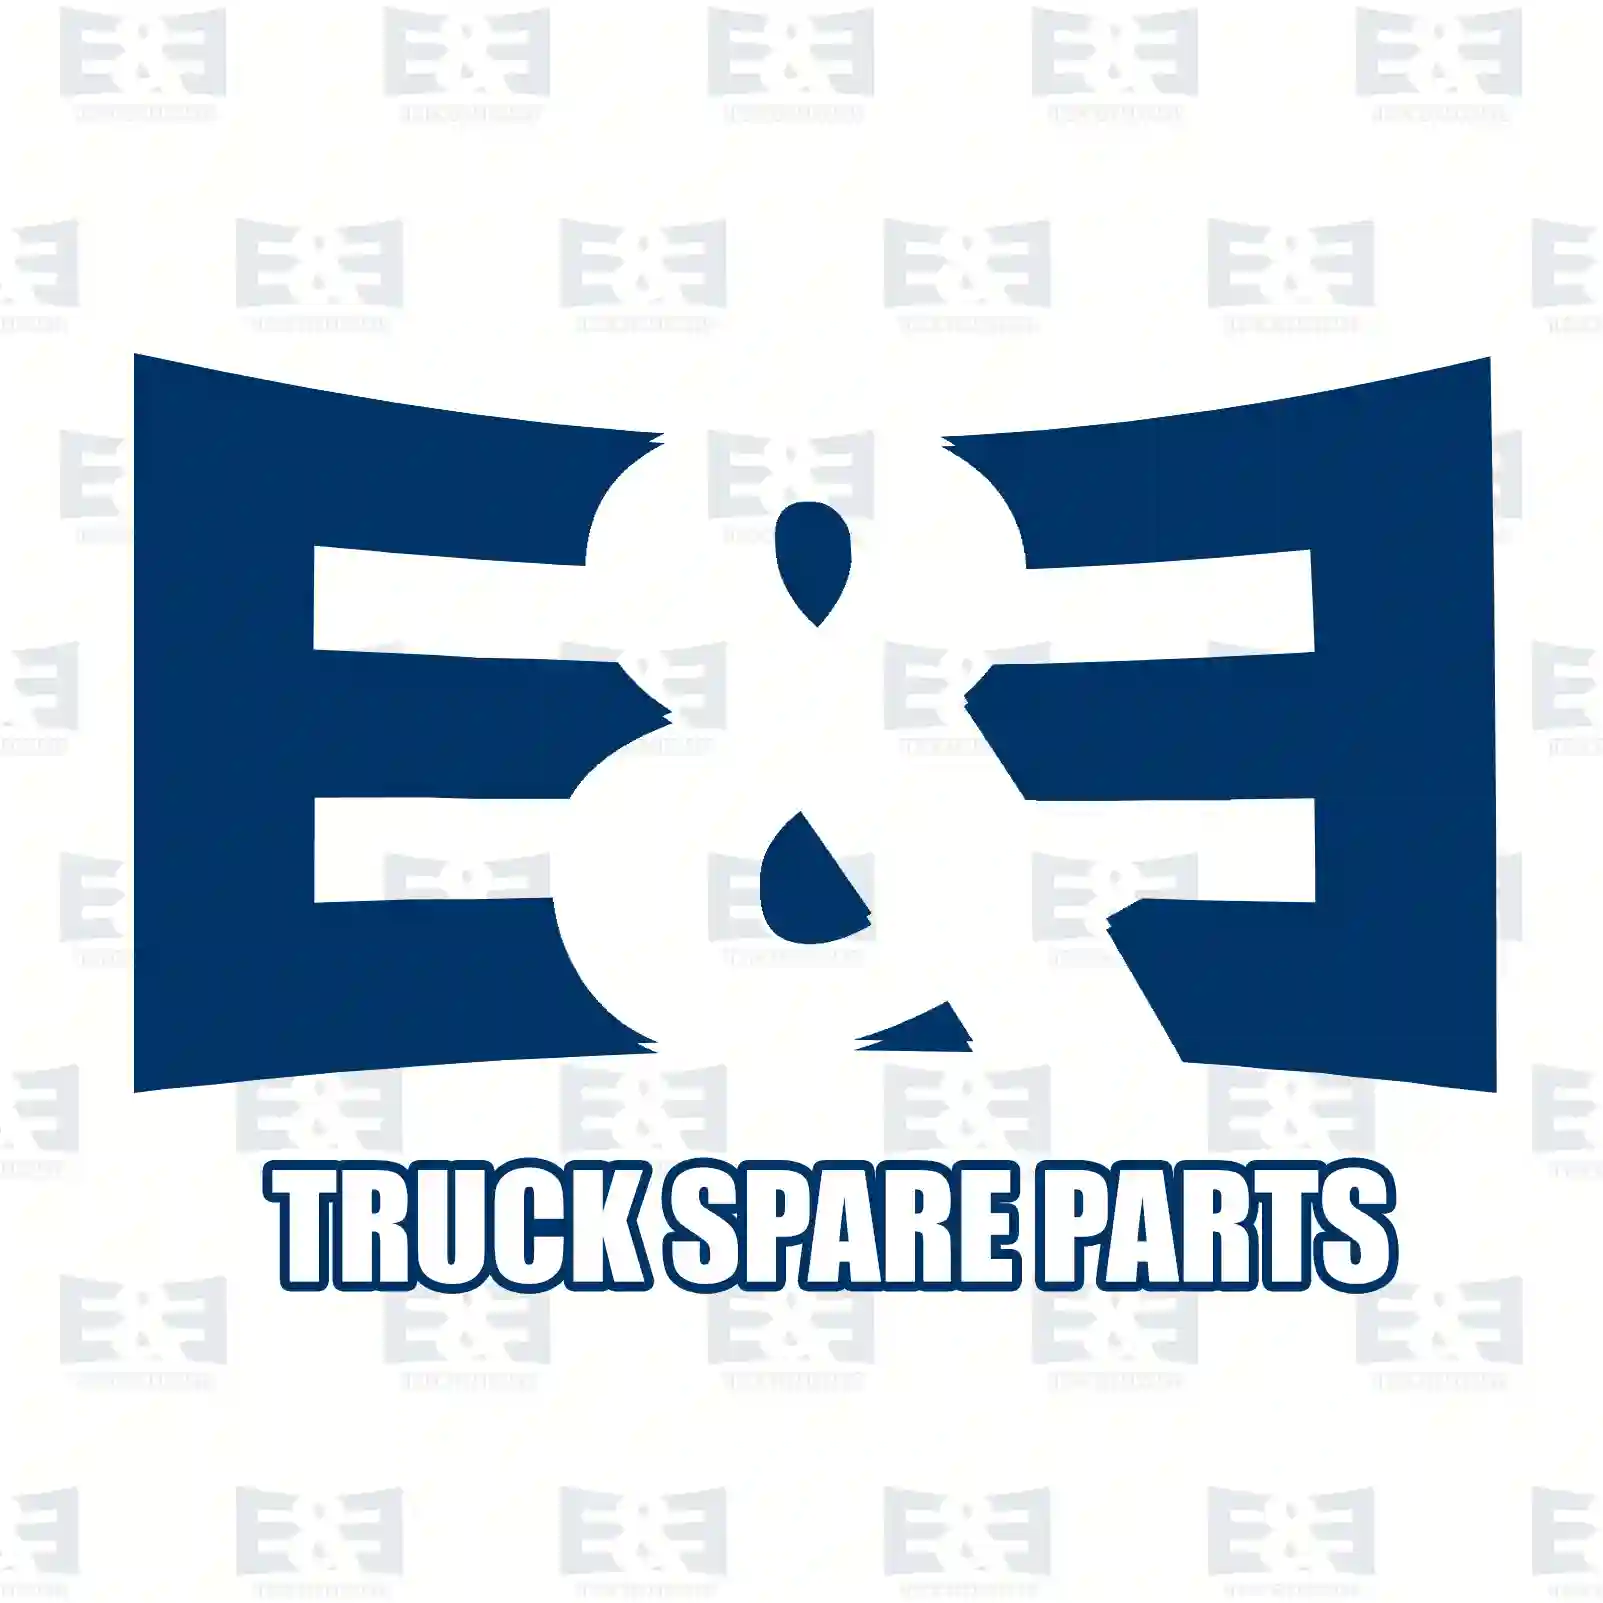 Fan clutch, 2E2201136, 1063042, 1436157, 6C11-8C617-CA, 7051414, 95VB-8A616-AA, 98VB-8A616-CA ||  2E2201136 E&E Truck Spare Parts | Truck Spare Parts, Auotomotive Spare Parts Fan clutch, 2E2201136, 1063042, 1436157, 6C11-8C617-CA, 7051414, 95VB-8A616-AA, 98VB-8A616-CA ||  2E2201136 E&E Truck Spare Parts | Truck Spare Parts, Auotomotive Spare Parts